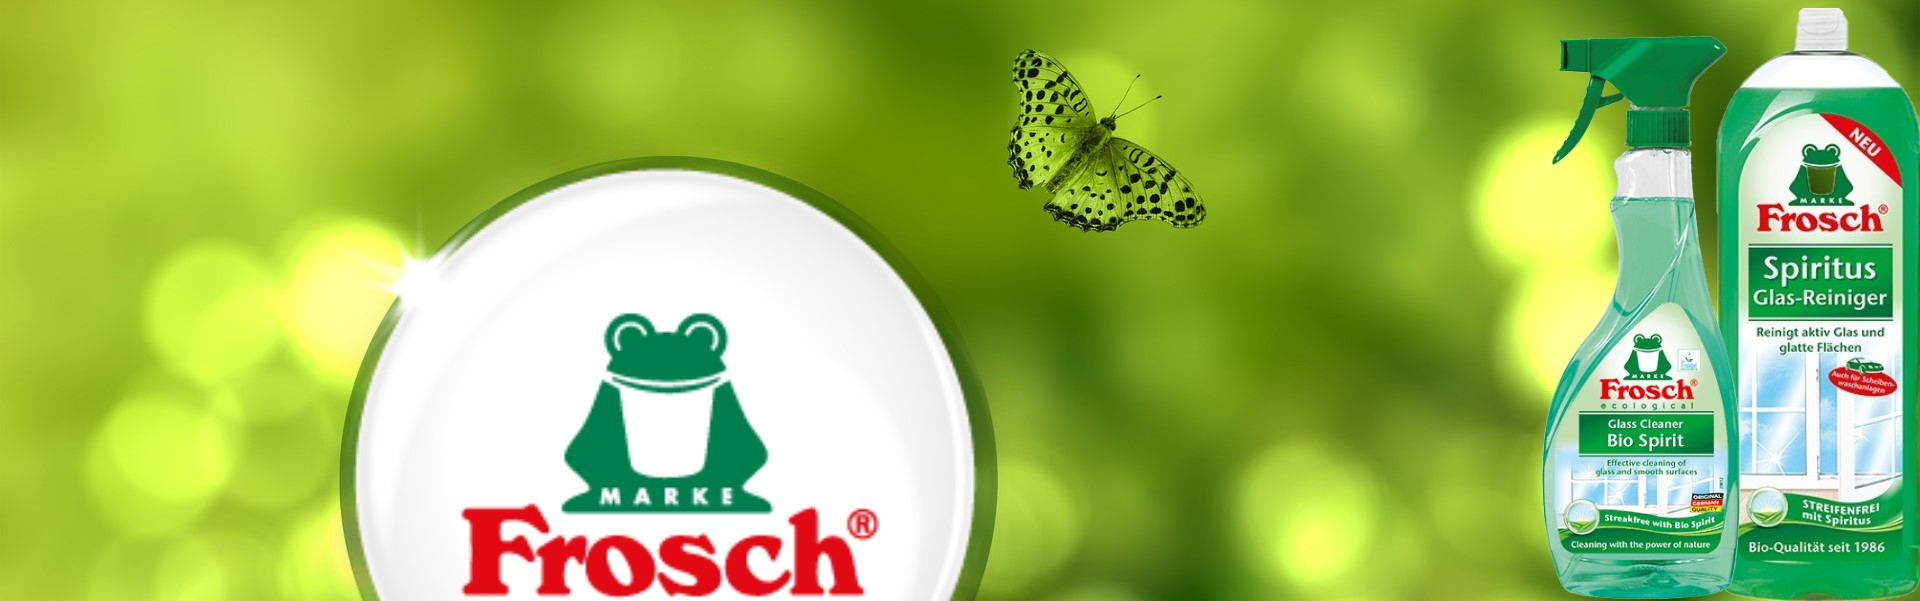 Frosch termékek a környezetvédelemért